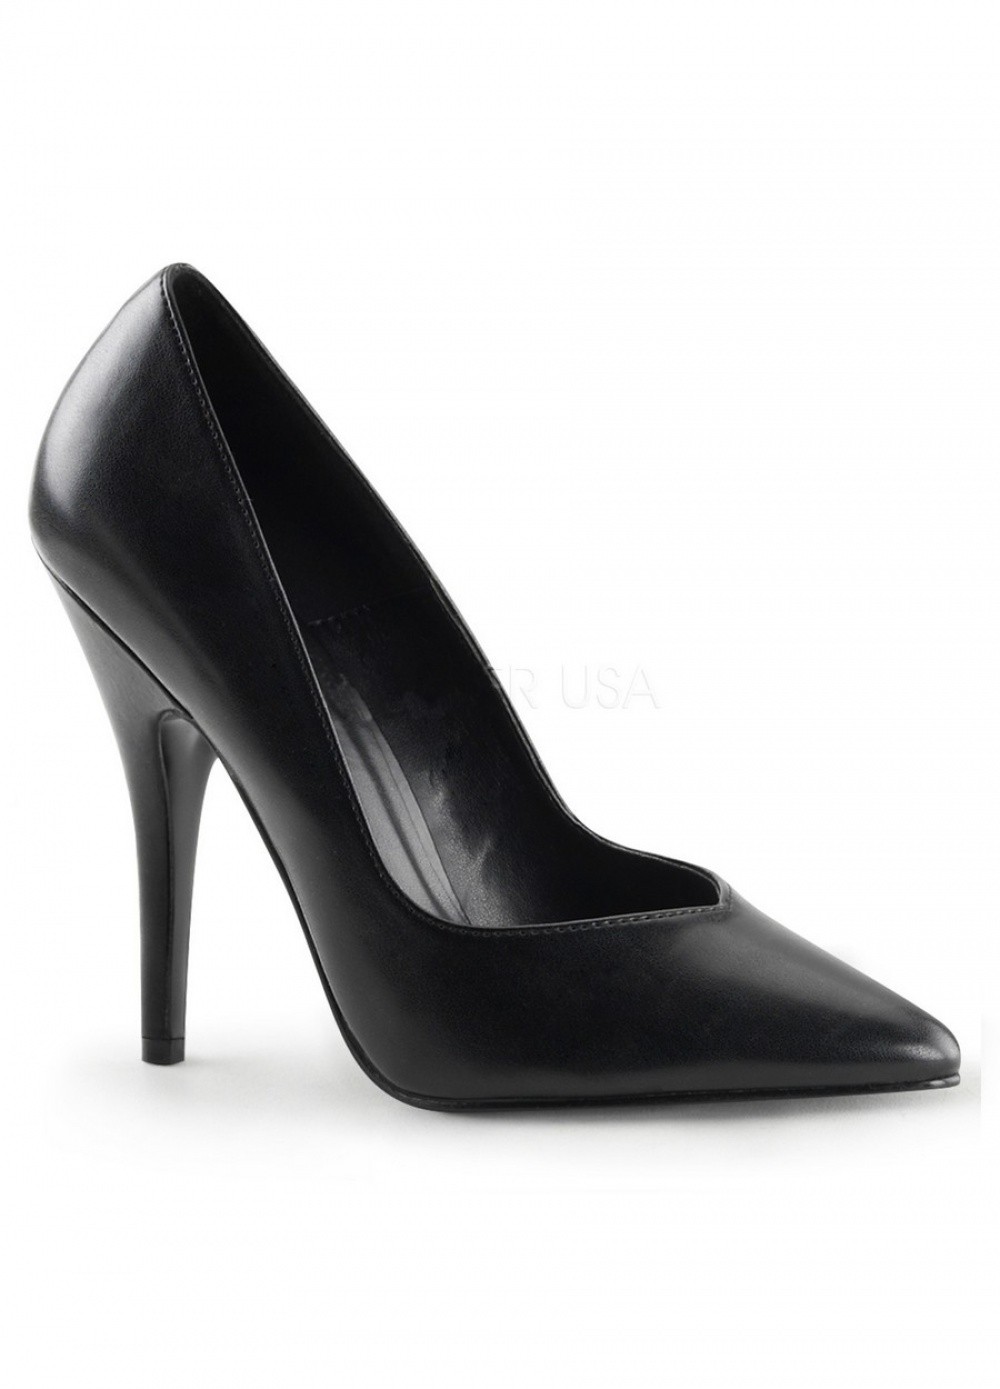 Pleaser Chaussures Escarpin noir grande Taille 41 au 46 - Talon 13 cm